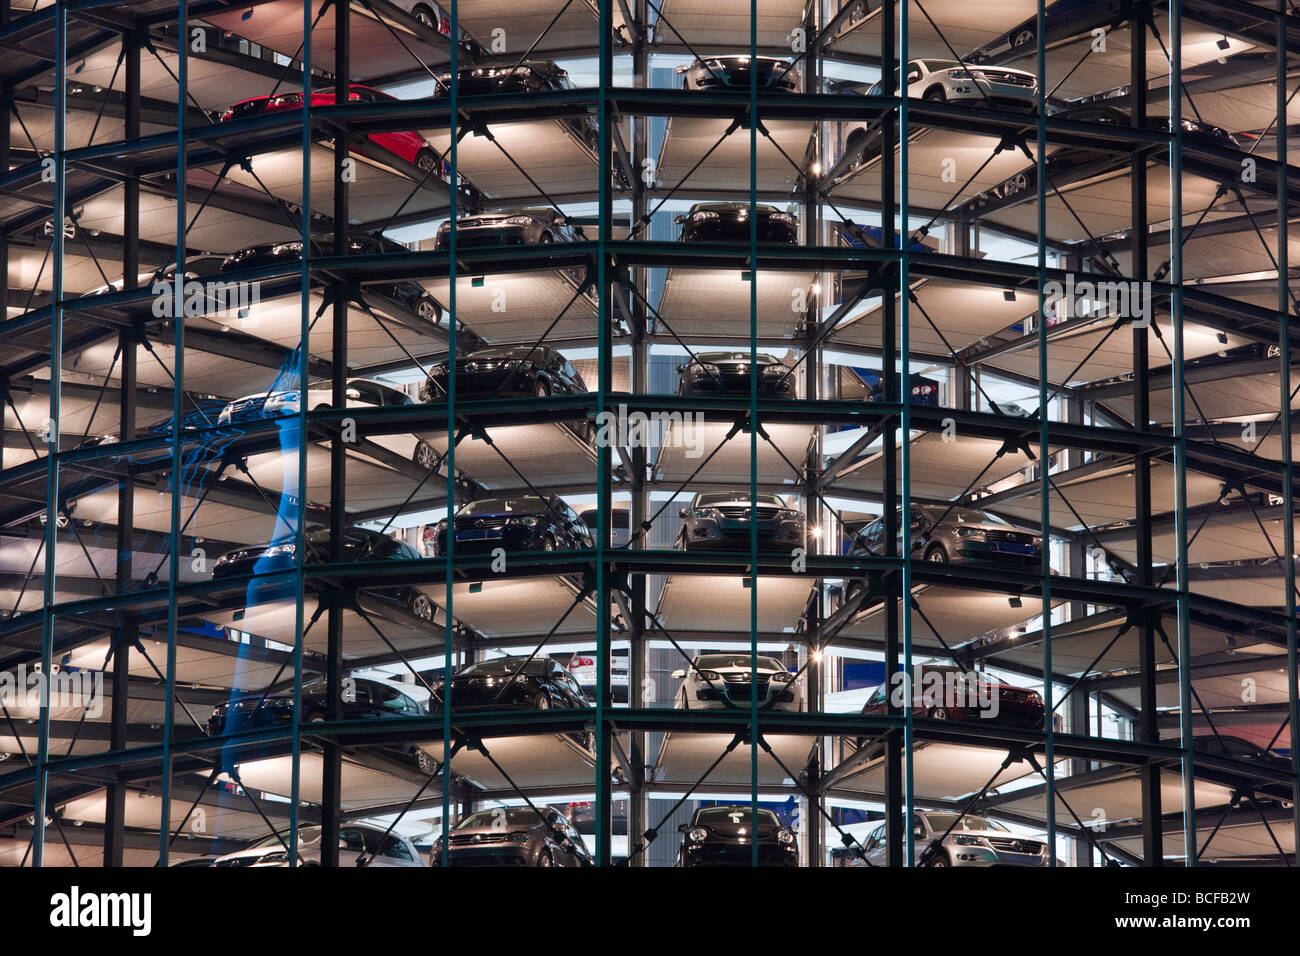 Germany, Lower Saxony, Wolfsburg, Autostadt, VW Auto Towers Stock Photo